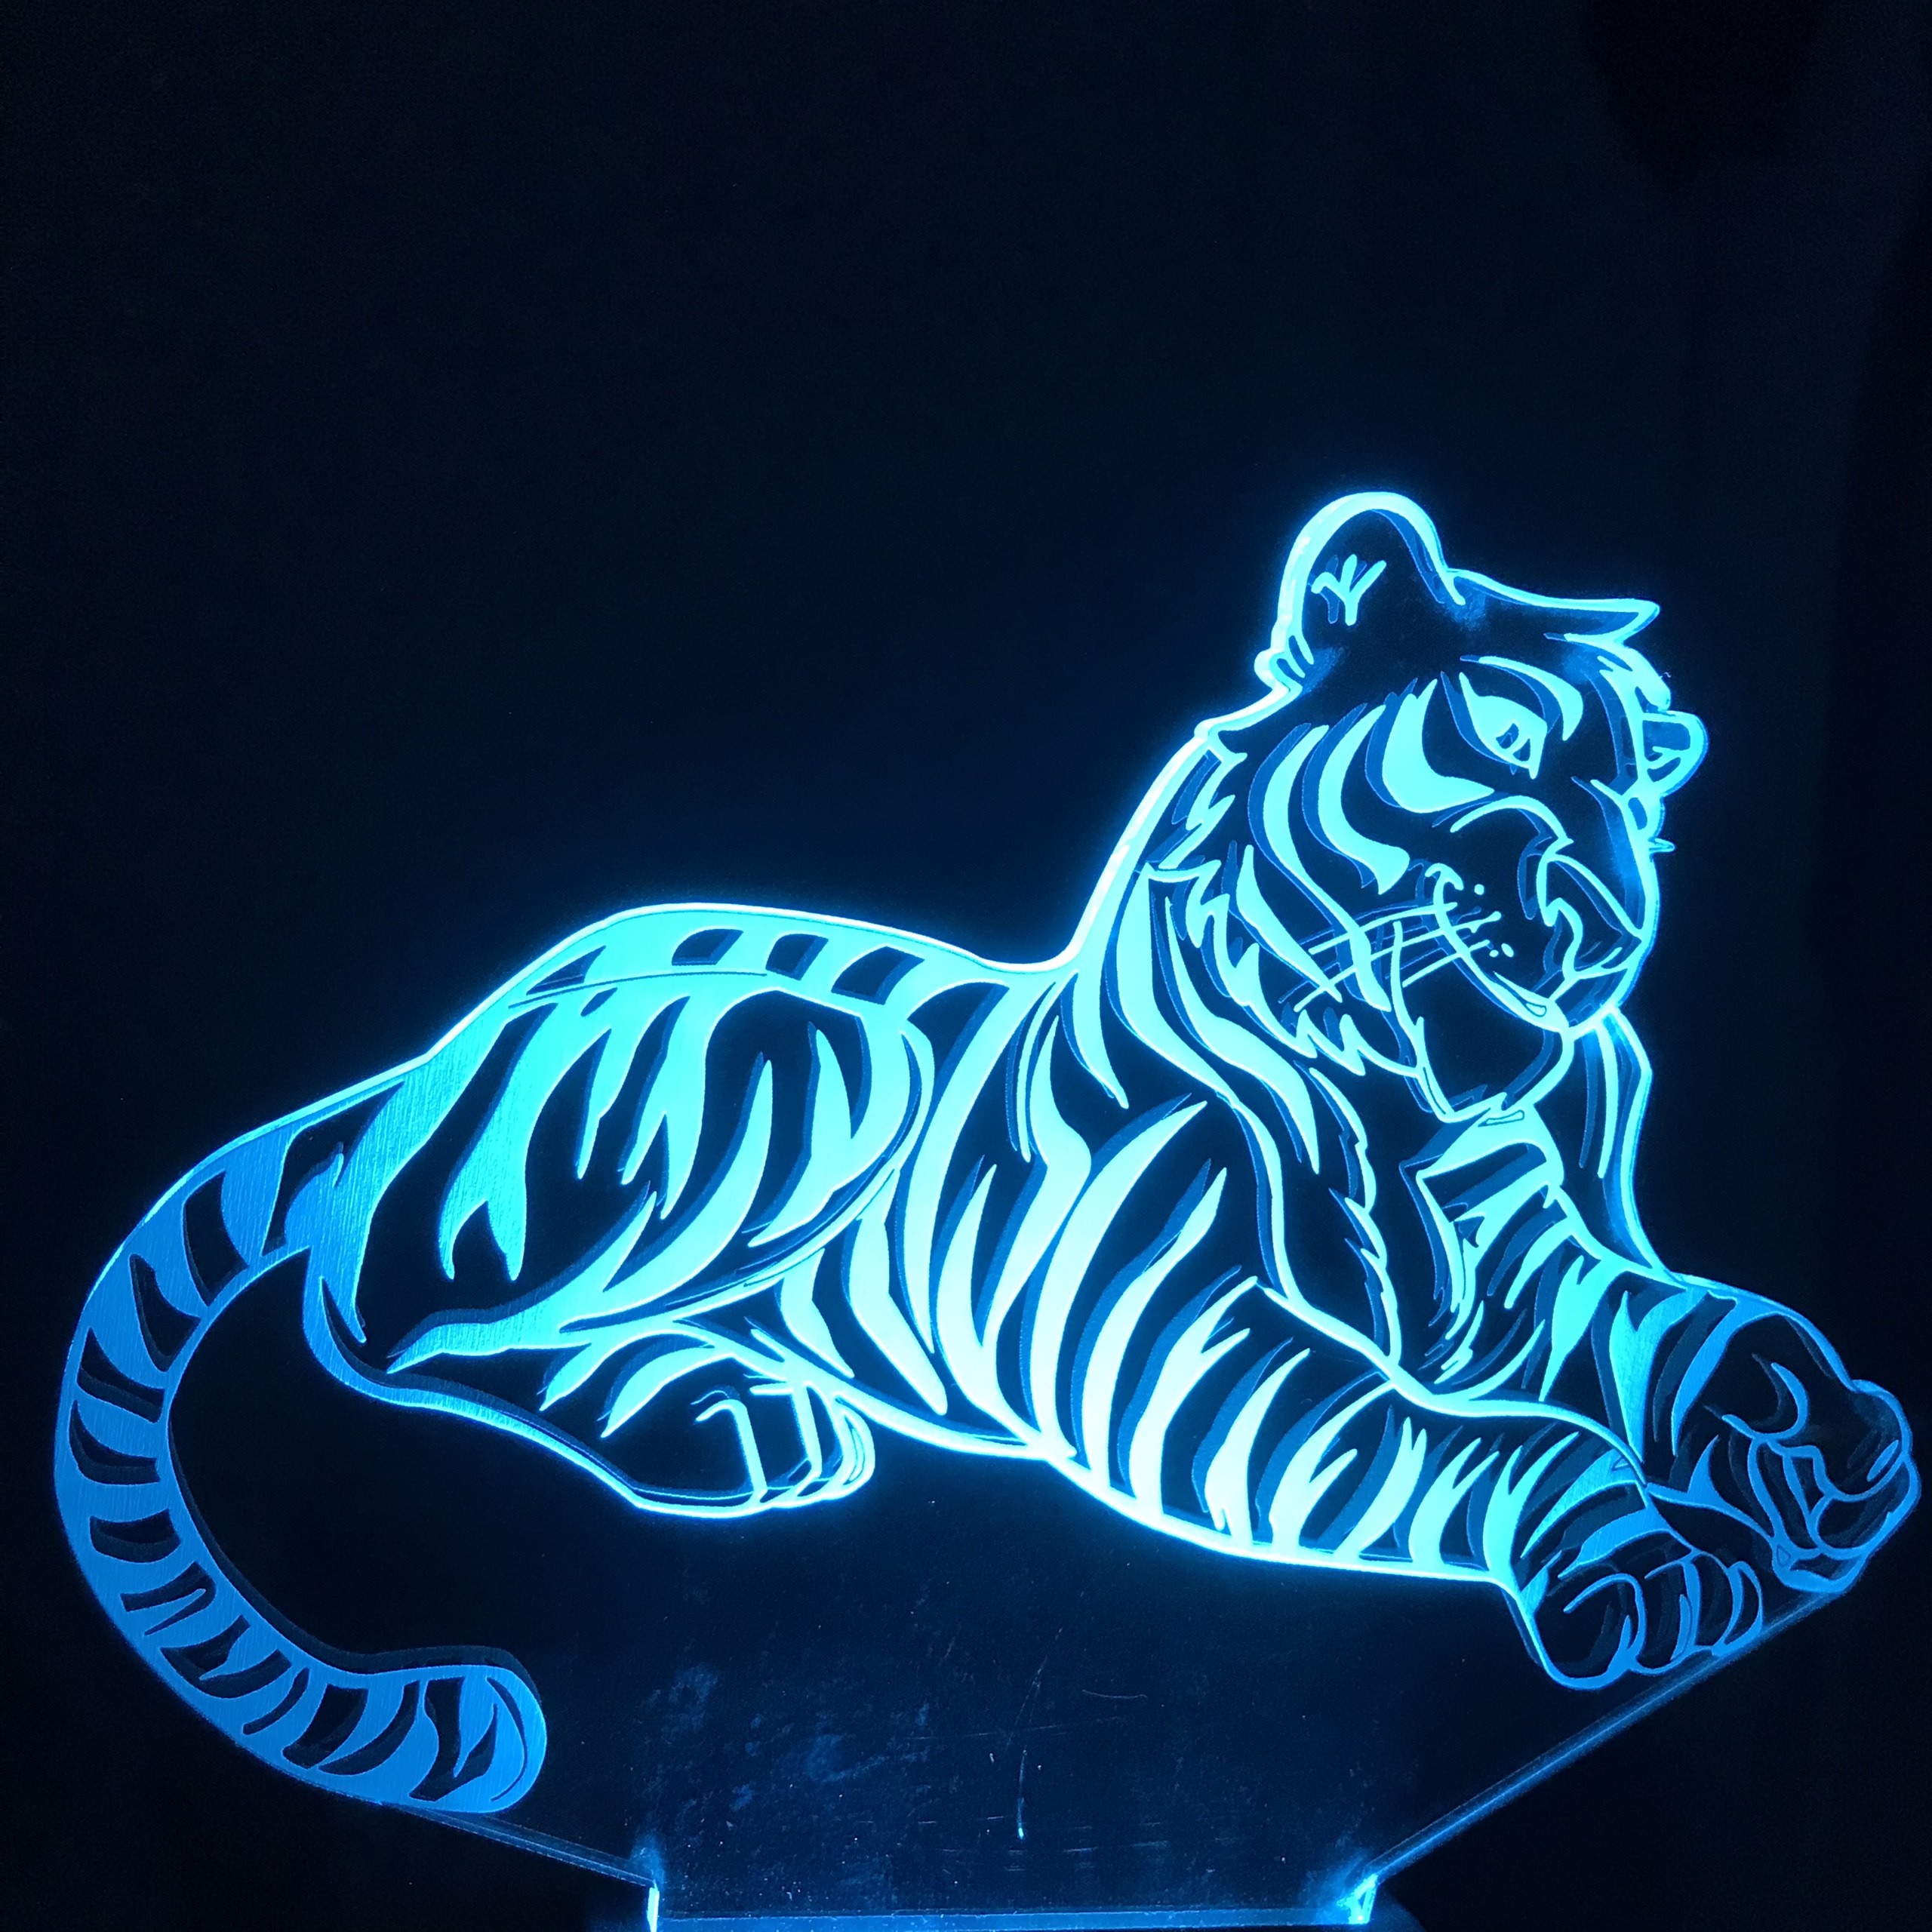 Đèn led con hổ 3d mang lại cảm giác vật lộn và bạo lực của một chú hổ hoang dã. Nếu bạn yêu thích những đồ vật ấn tượng và độc đáo trong nhà của mình, hãy tìm hiểu về đèn led con hổ 3d ngay bây giờ.